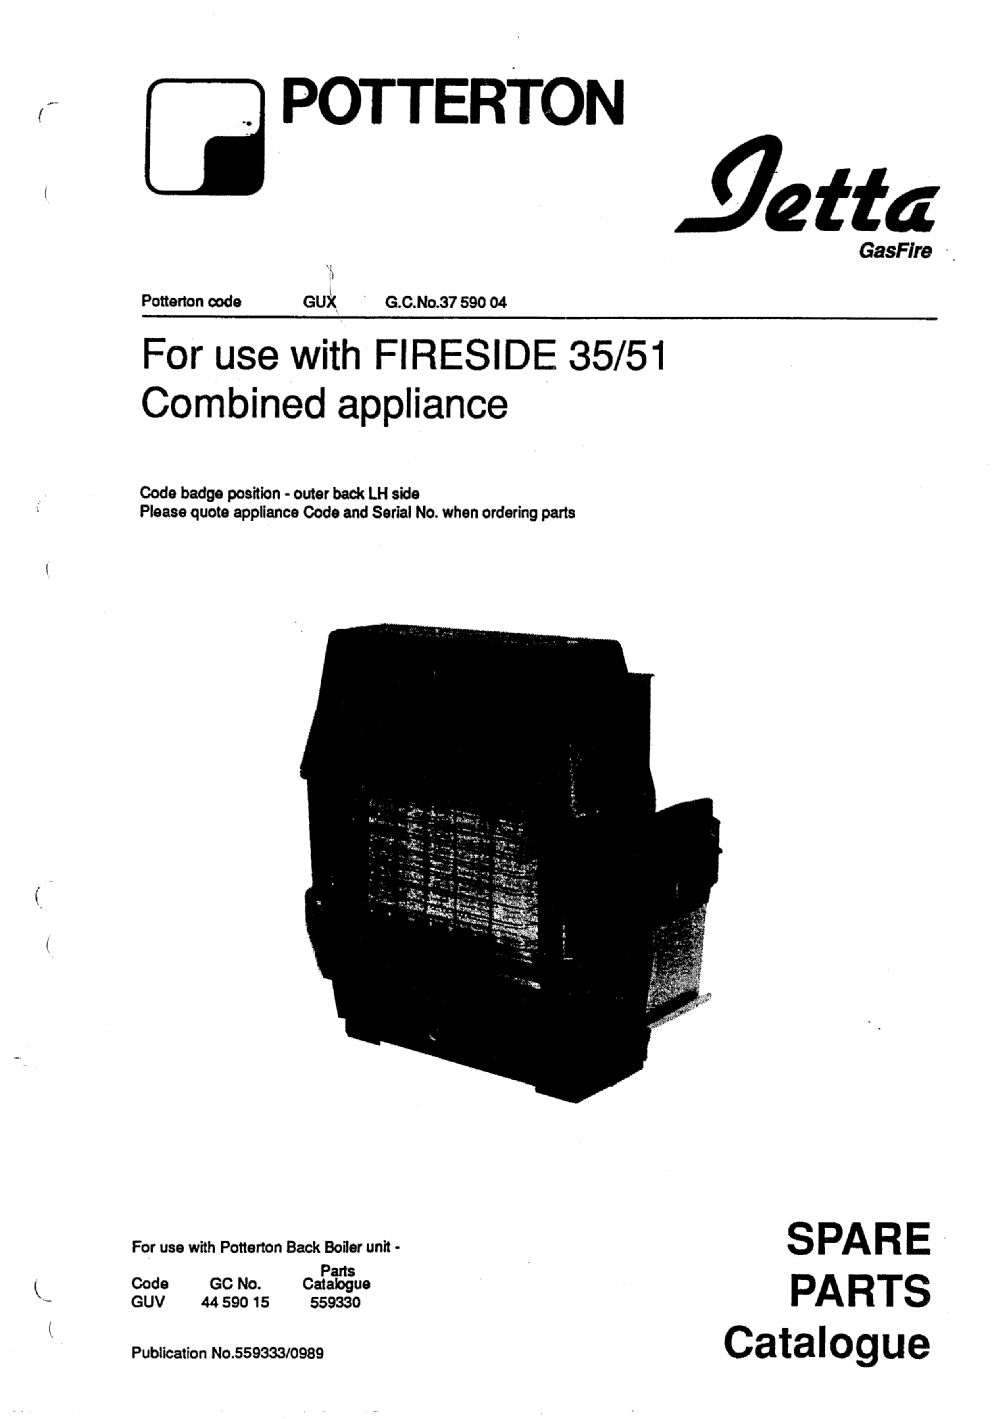 Firesize 35/51 Jetta Fire - appliance_4263